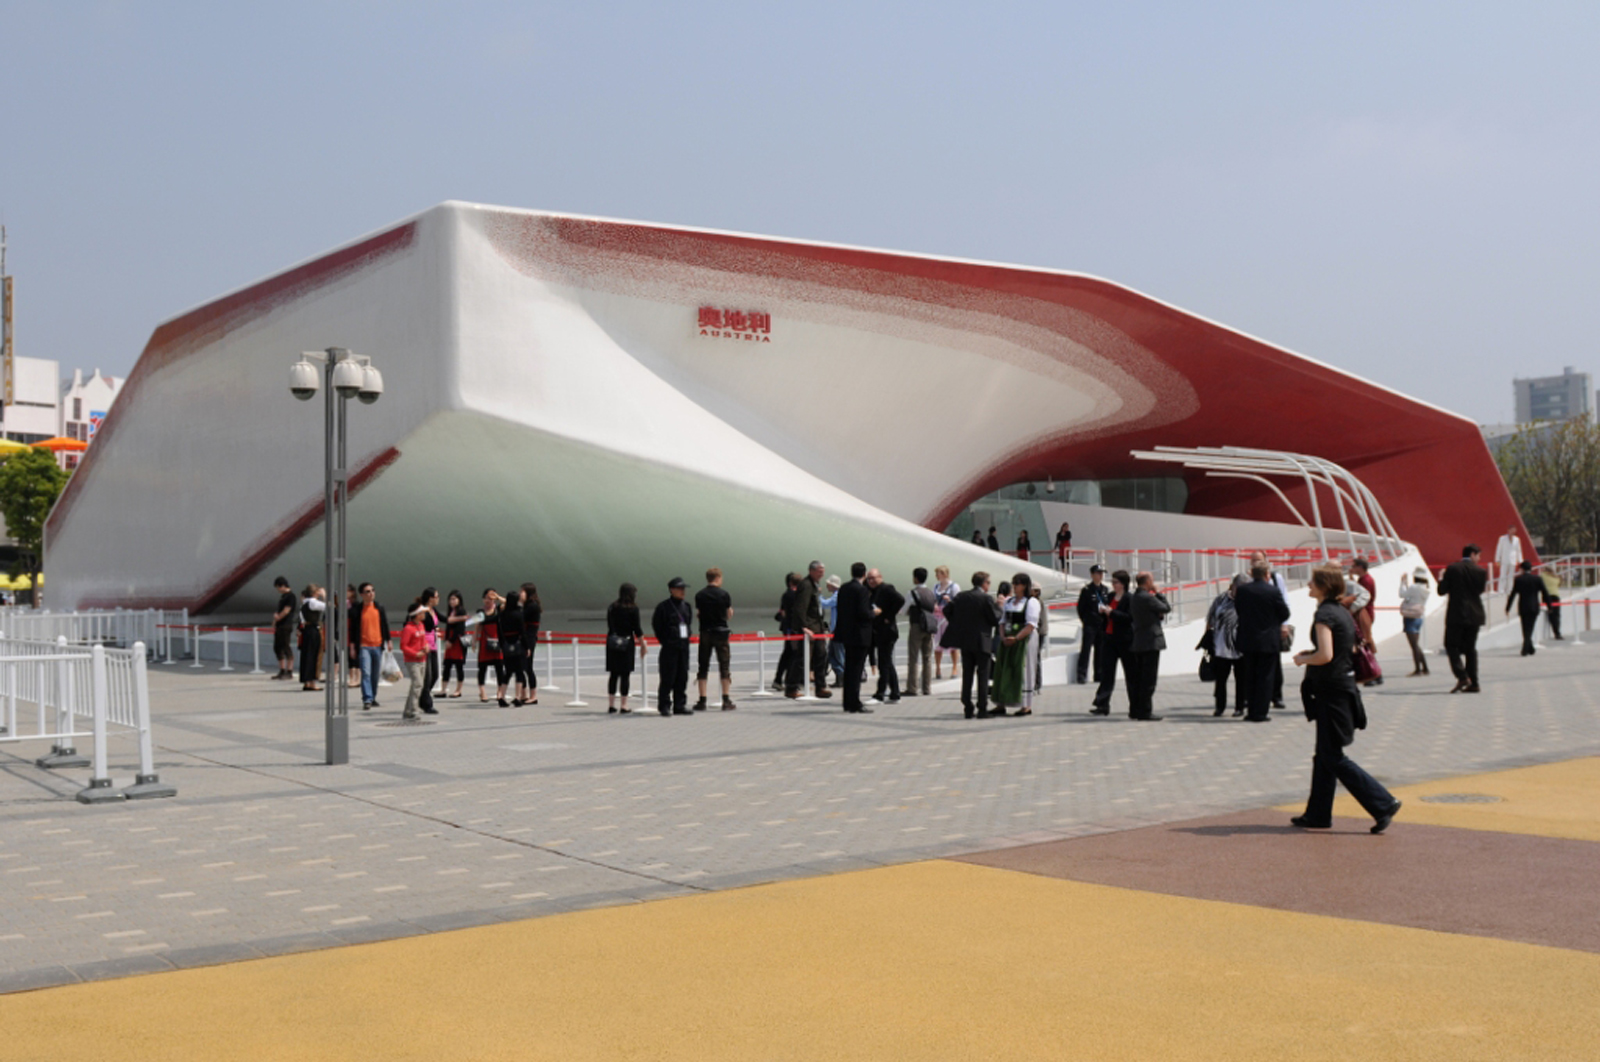 El pabellón de Austria, construido por FCC, uno de los más visitados de la expo de Shanghai